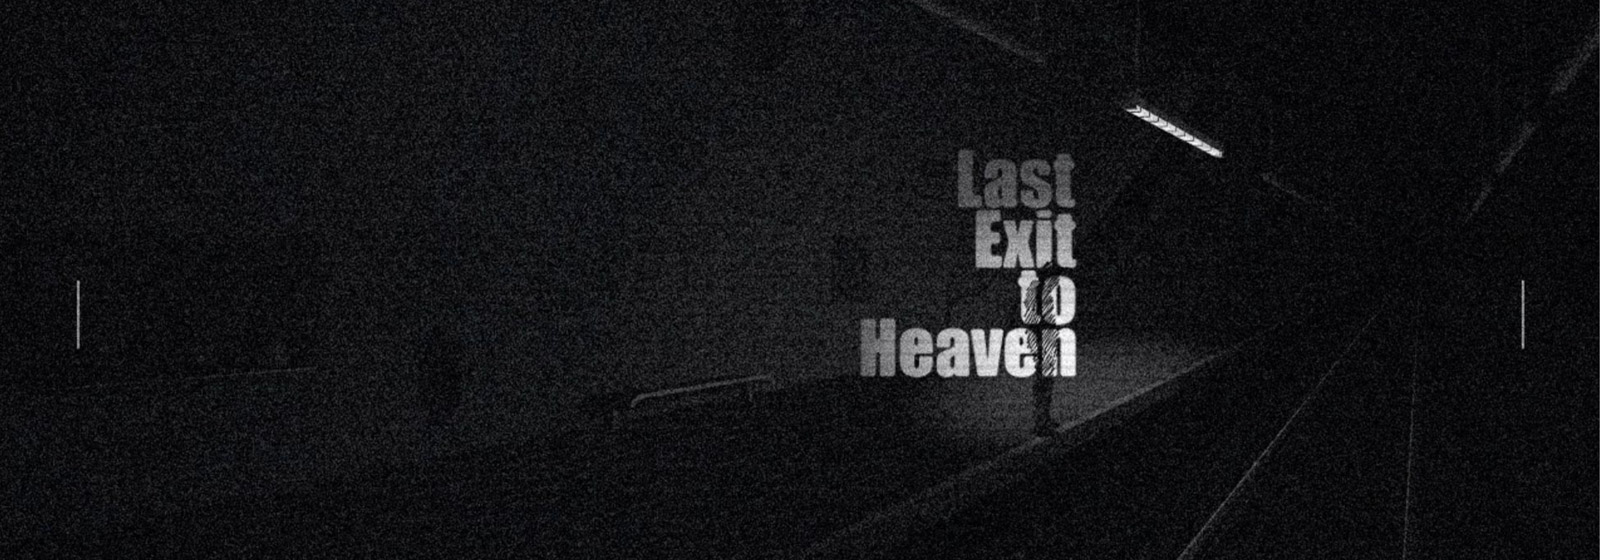 düstere Szene aus Last Exit to Heaven